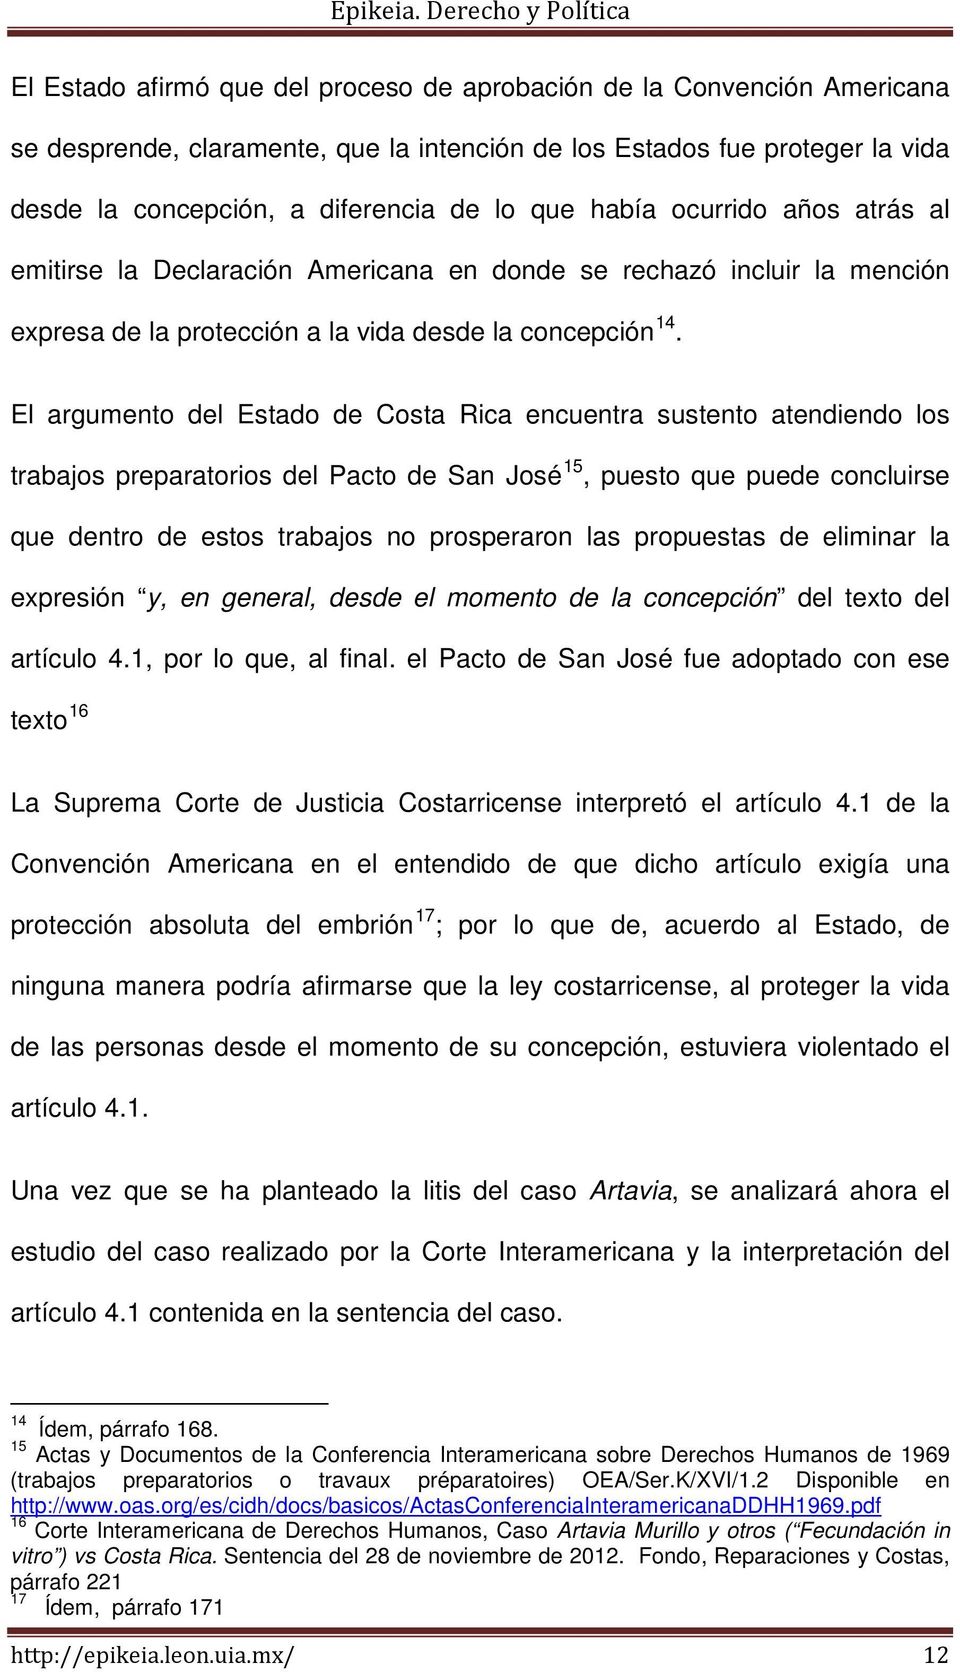 El argumento del Estado de Costa Rica encuentra sustento atendiendo los trabajos preparatorios del Pacto de San José 15, puesto que puede concluirse que dentro de estos trabajos no prosperaron las